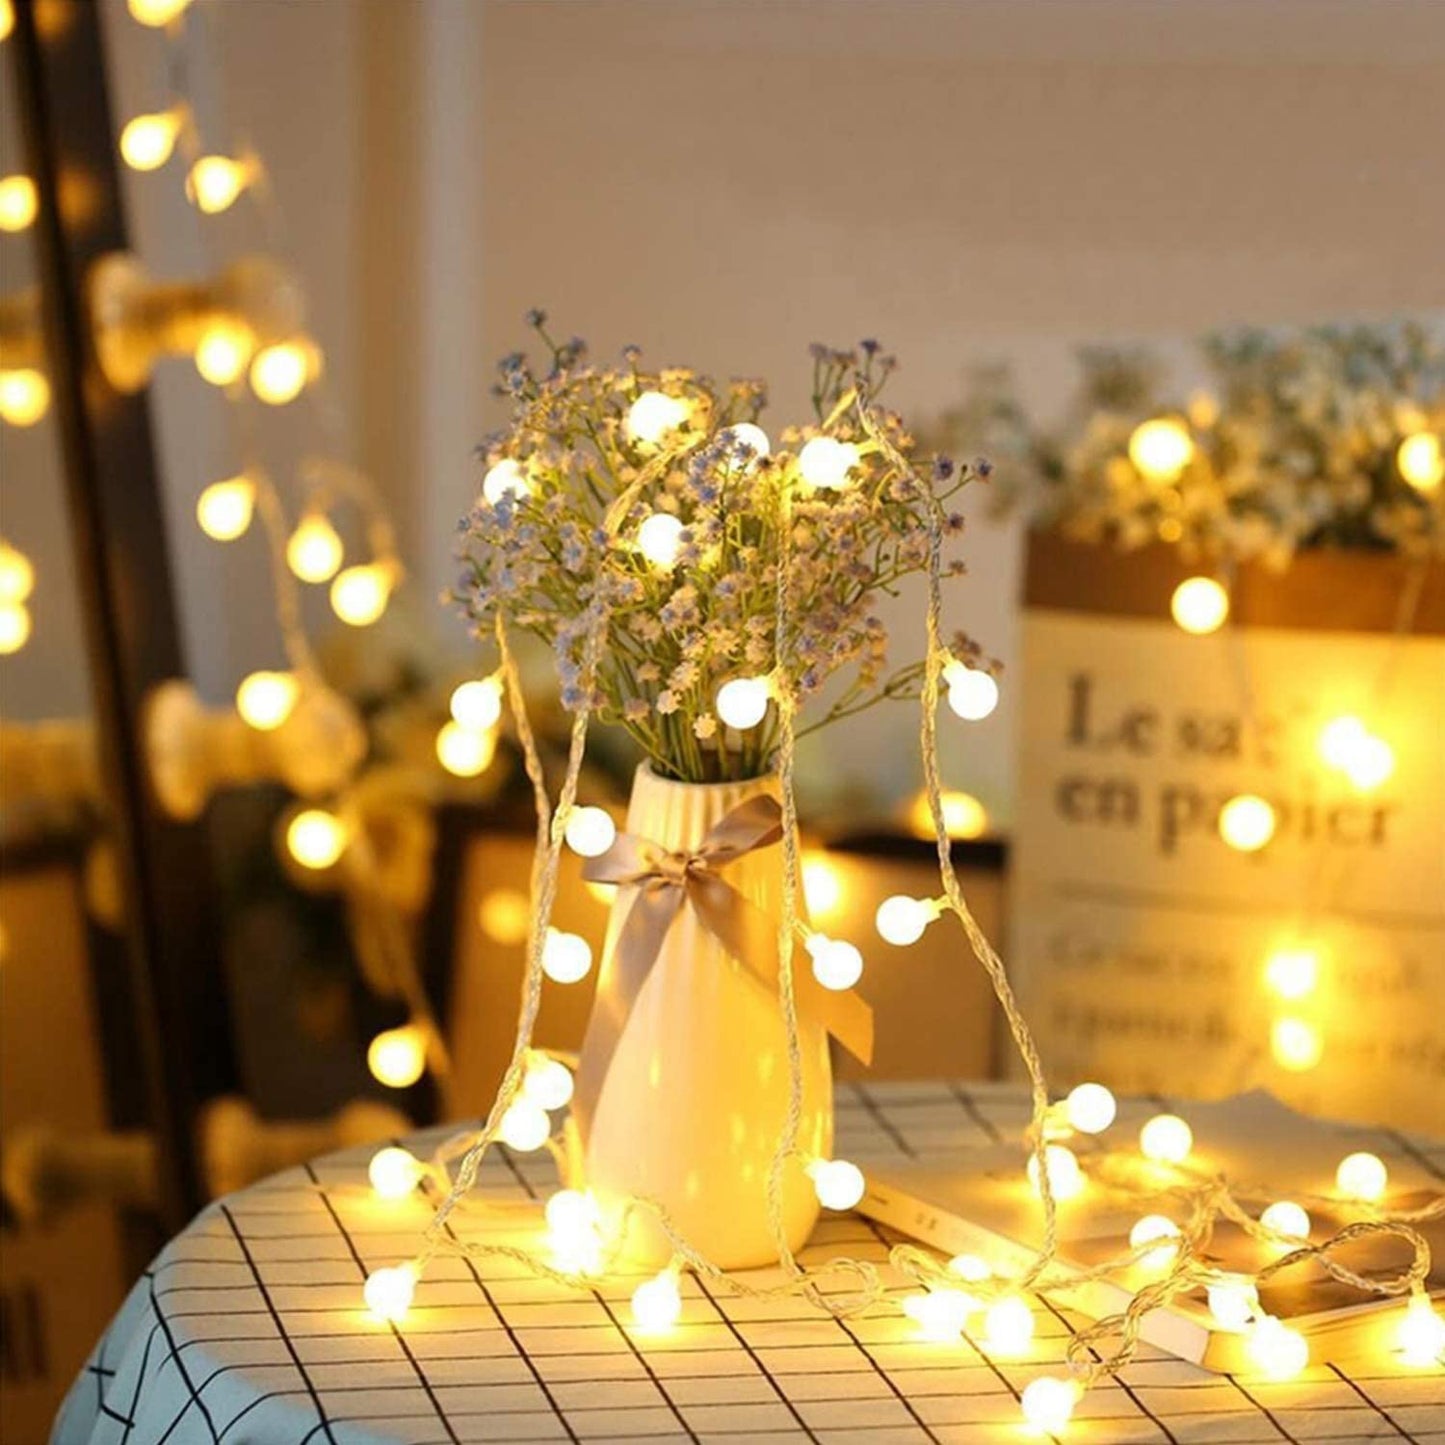 Guirlande LED Veilleuse Intérieur - Idéale pour créer une ambiance chaleureuse et romantique dans votre maison